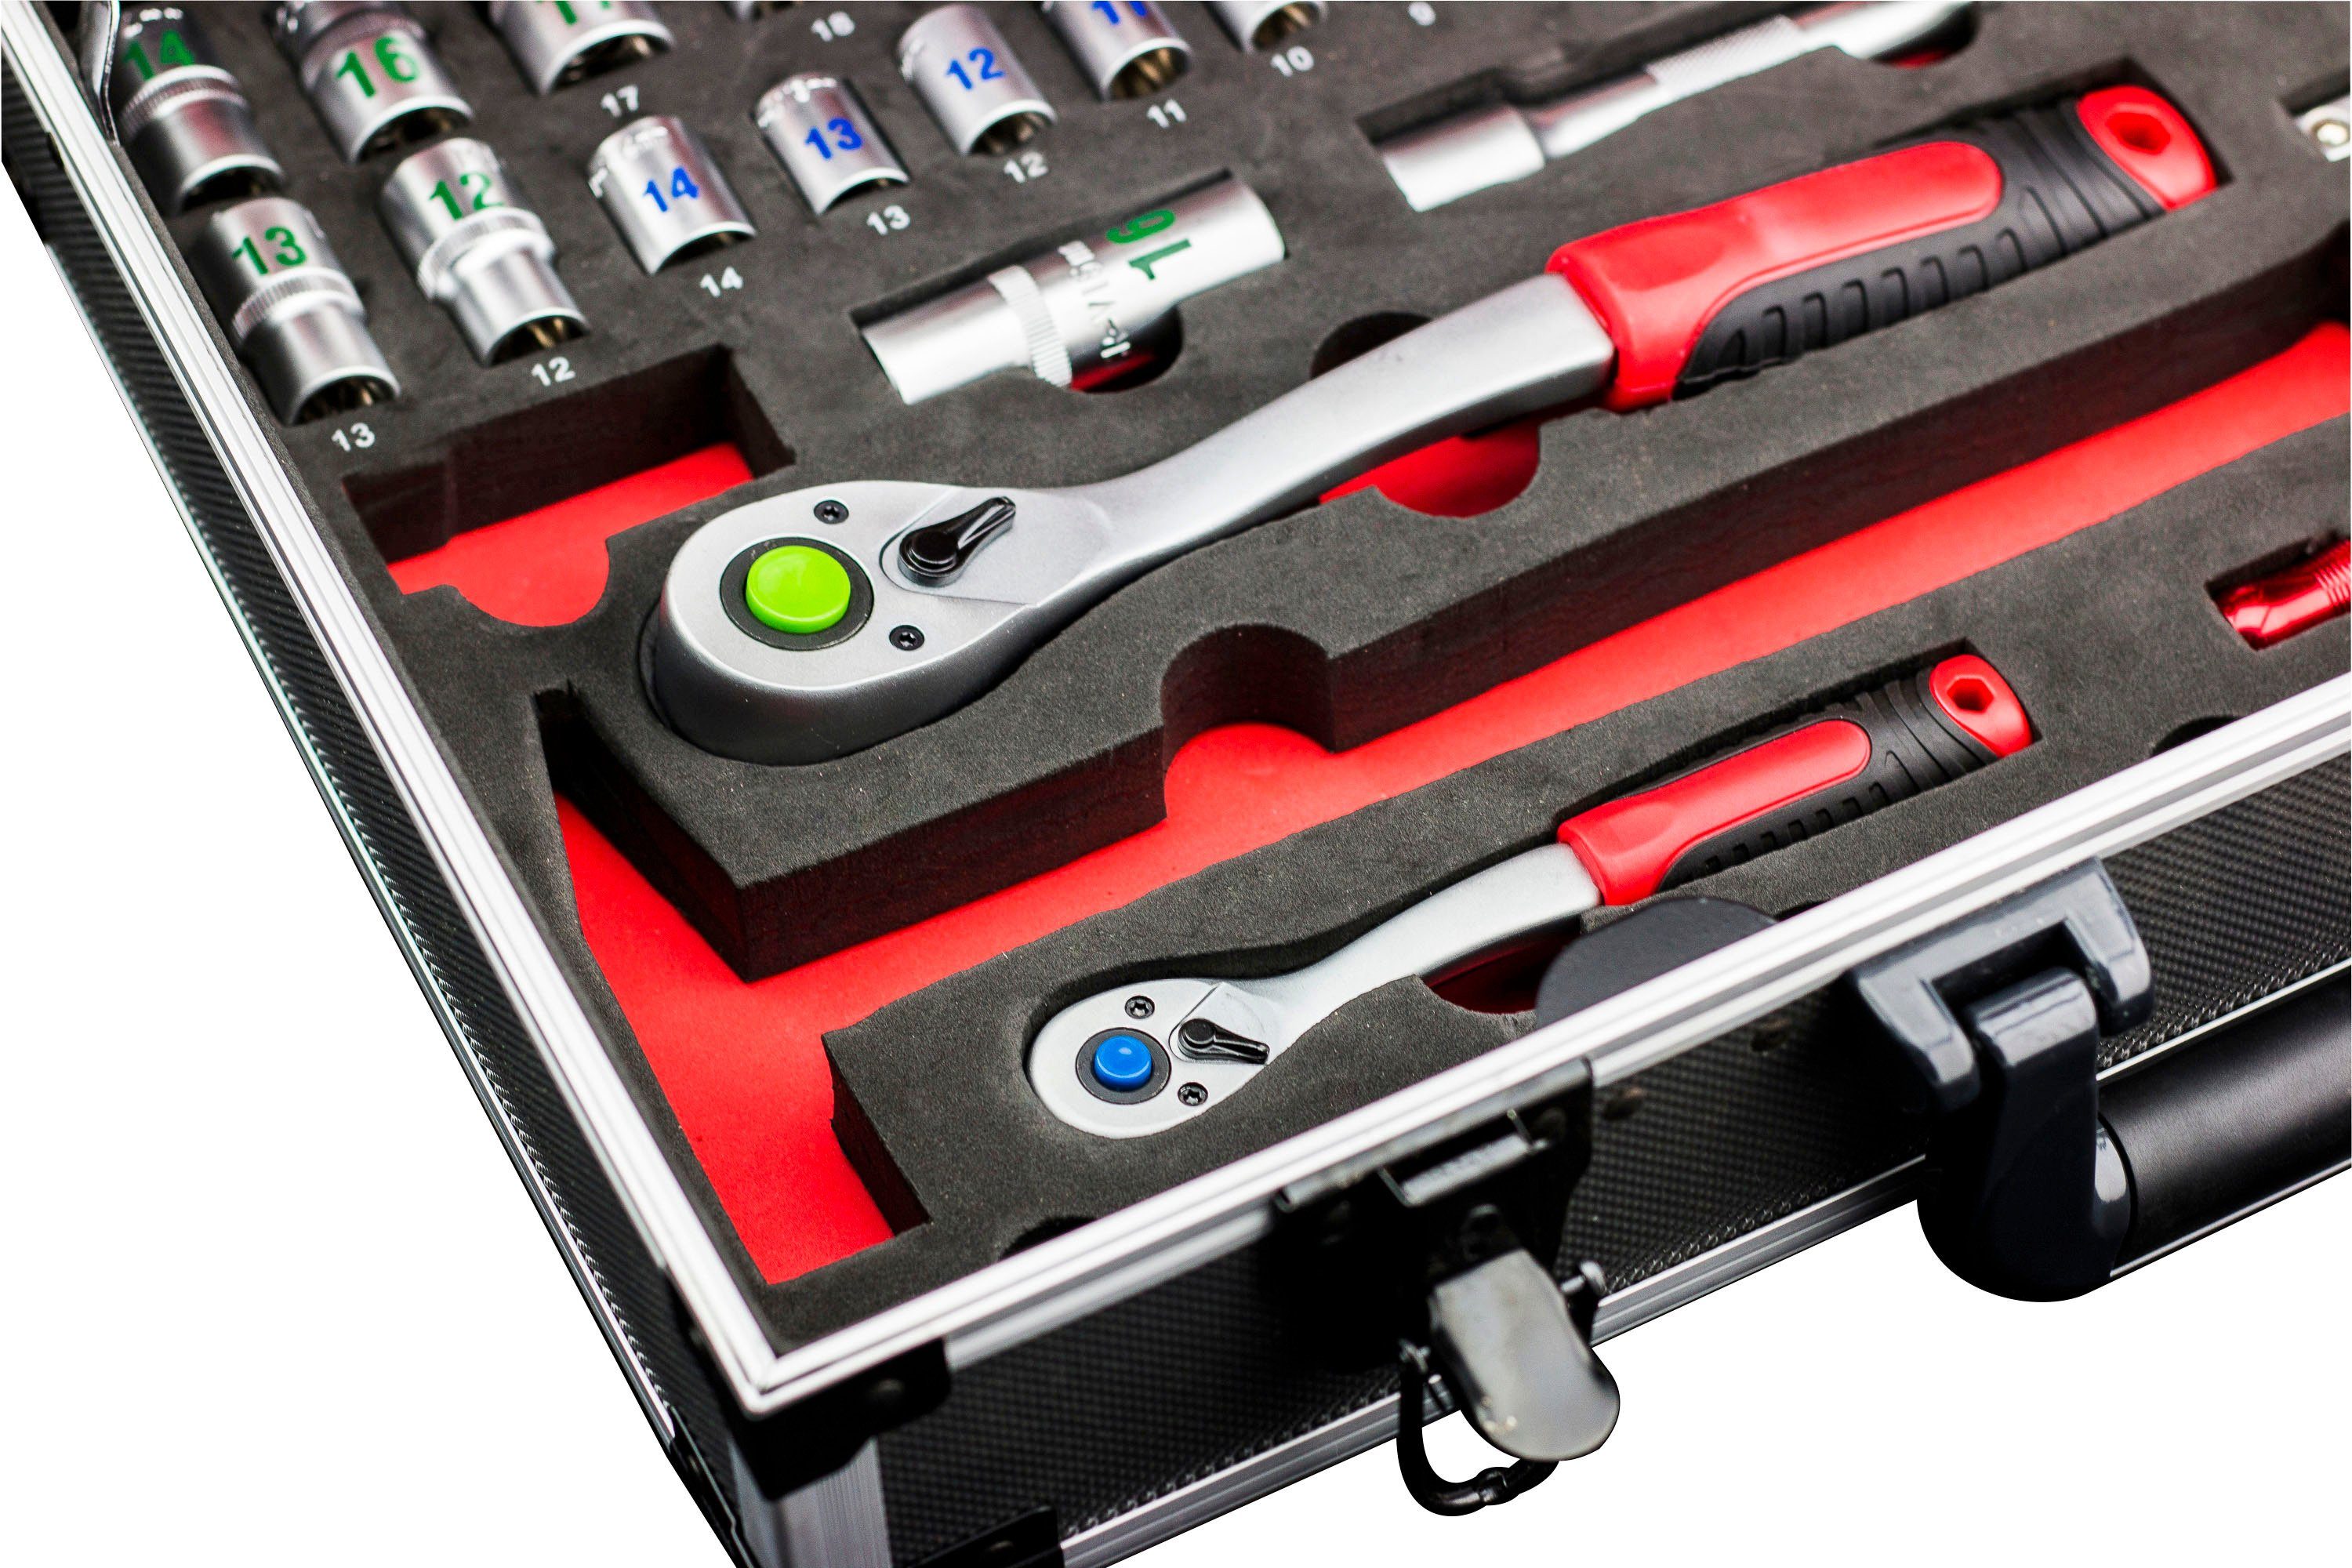 meister Werkzeugset Alu-Koffer von Profi & Wera, / Werkzeugkoffer mit 131-teilig, 8973750, Knipex Qualitätswerkzeug